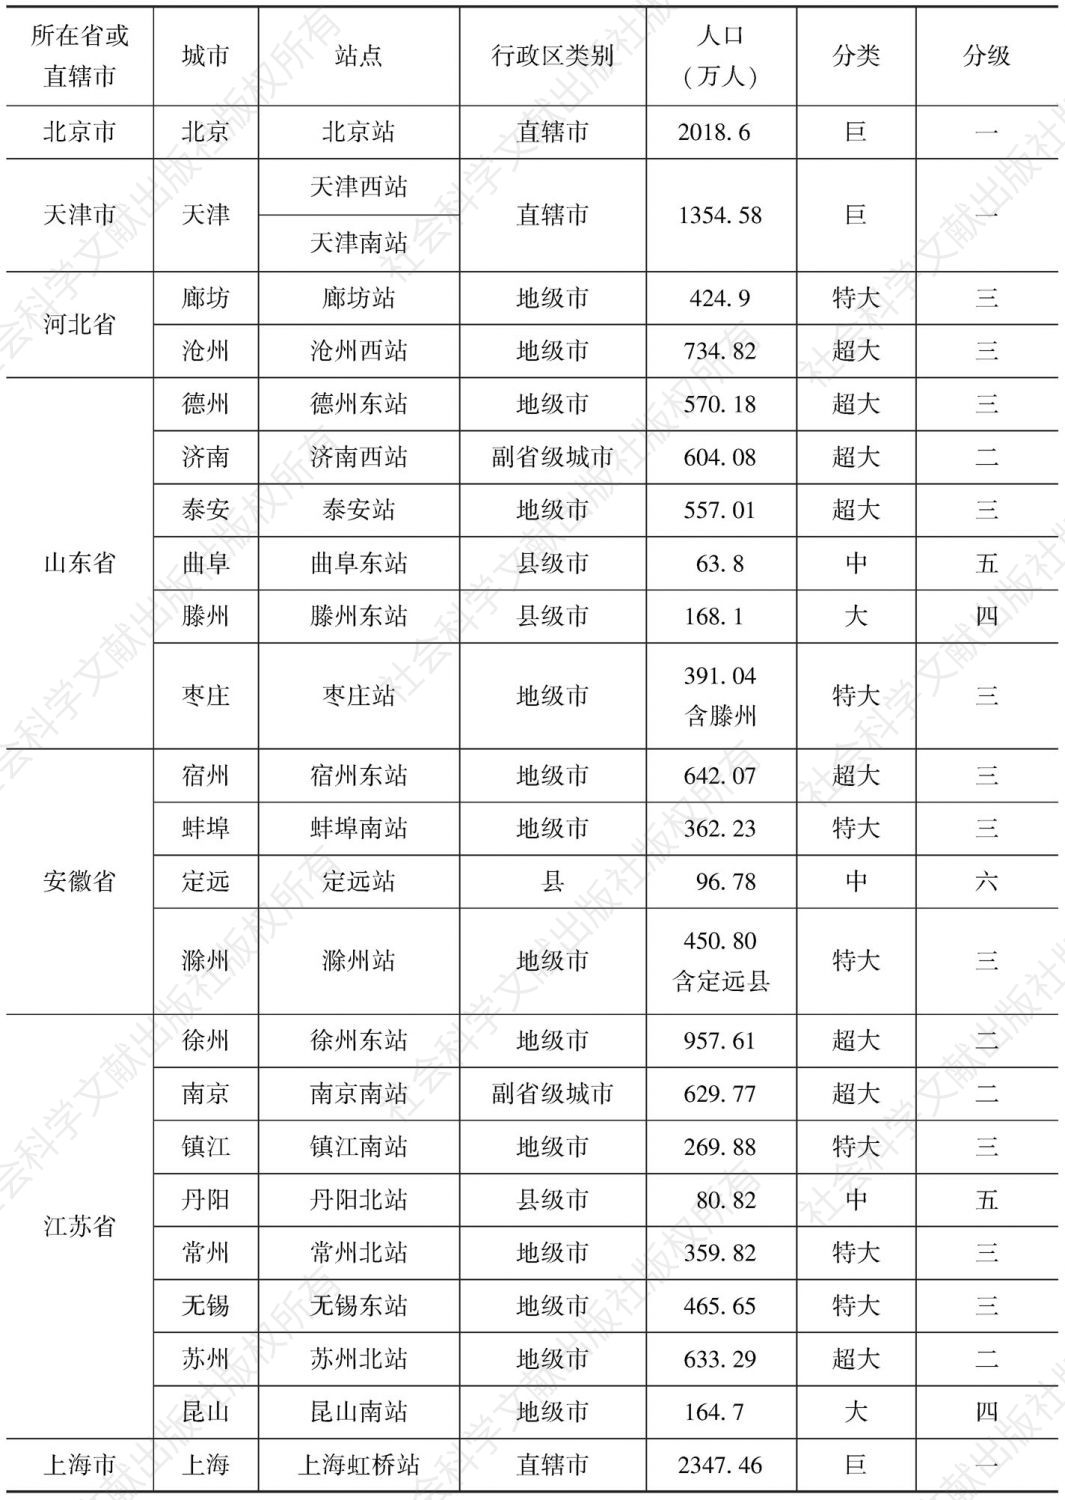 表4-10 京沪高铁沿线城市级别